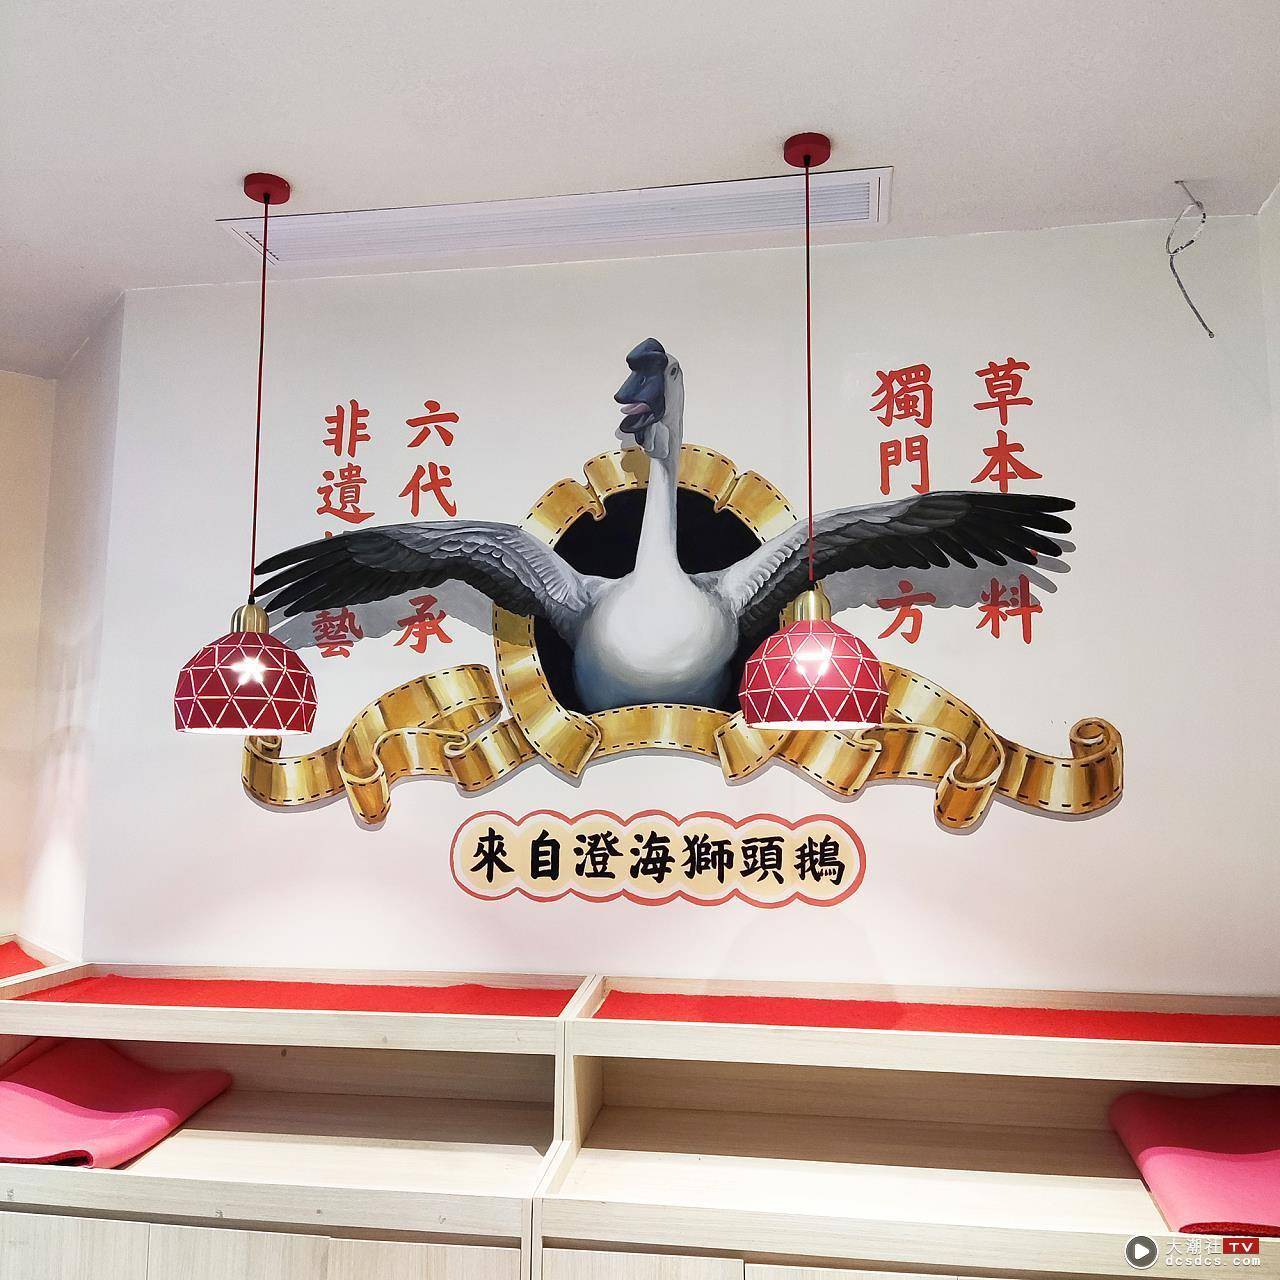 汕头万象城日日香墙绘 / 3D墙绘 / 鹅肉店餐饮墙绘壁画